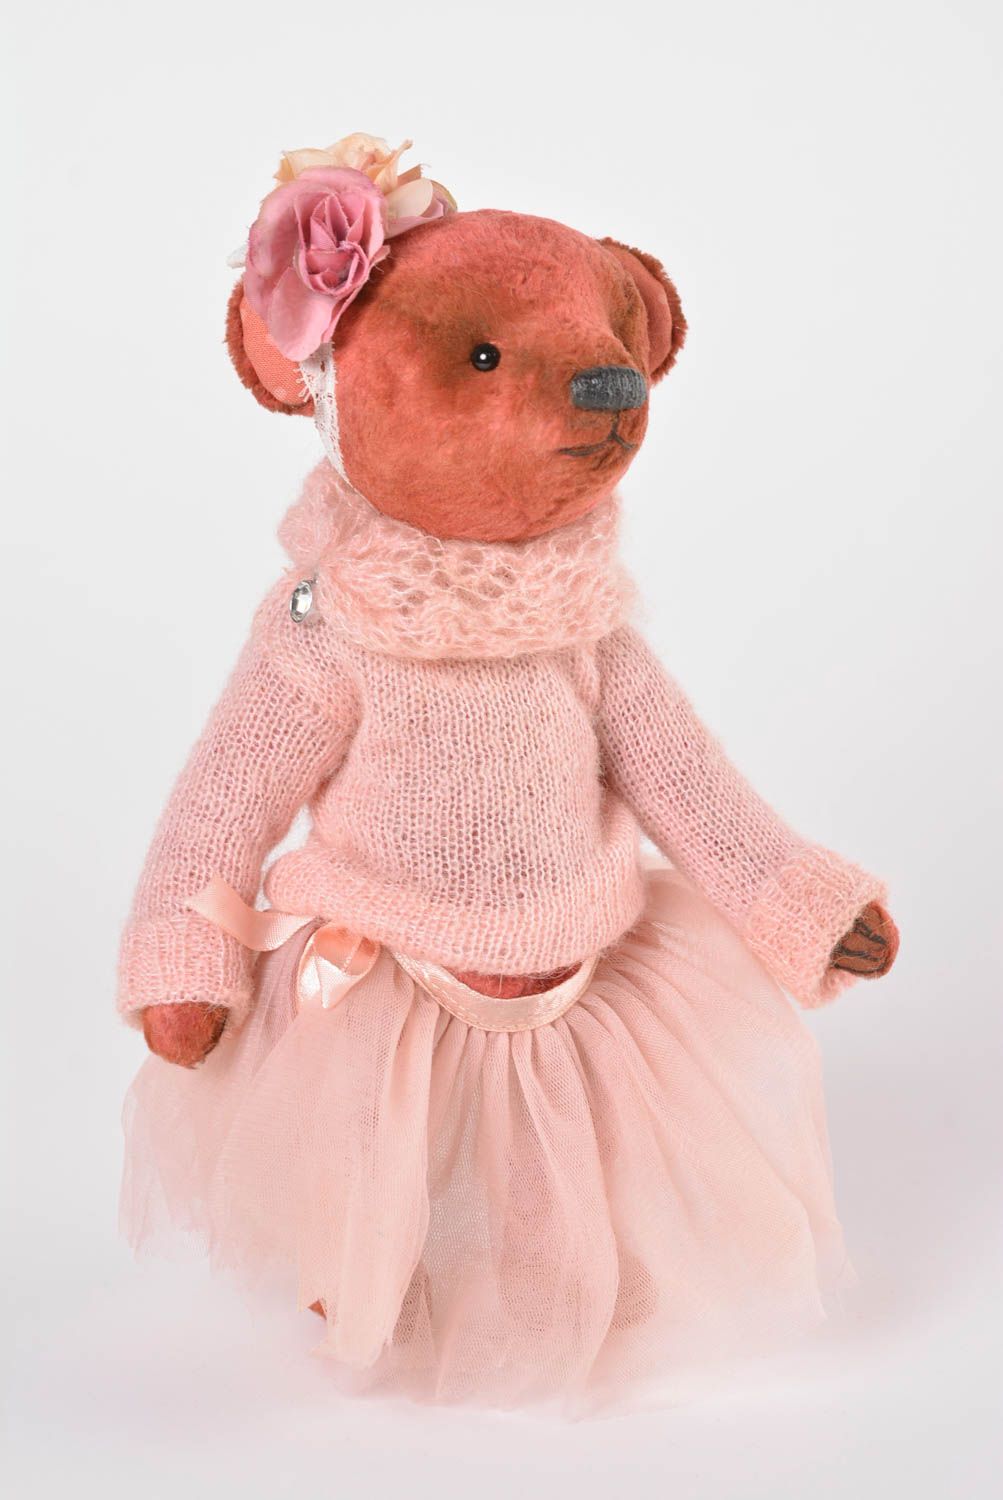 Плюшевый мишка игрушка ручной работы интересный подарок девушка в платье фото 1